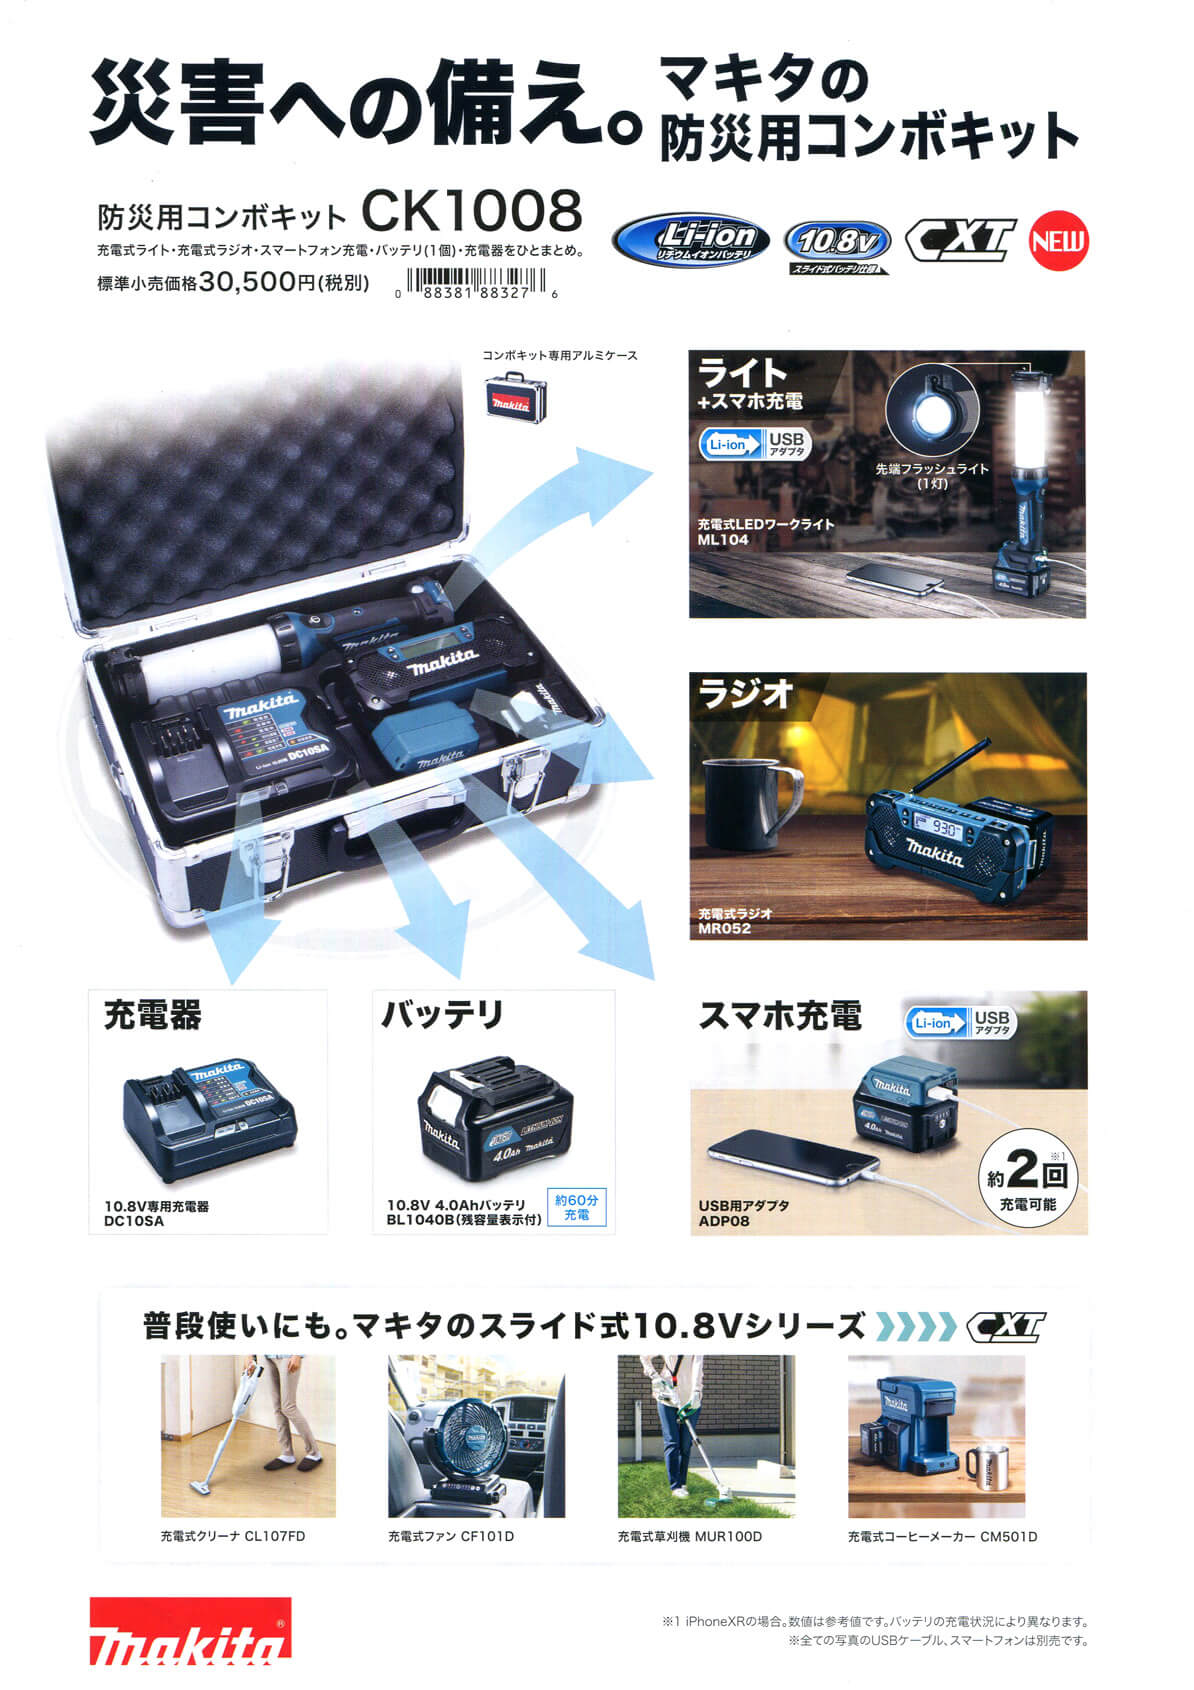 マキタ Makita コードレス防災用コンボキット CK1008充電式ラジオM